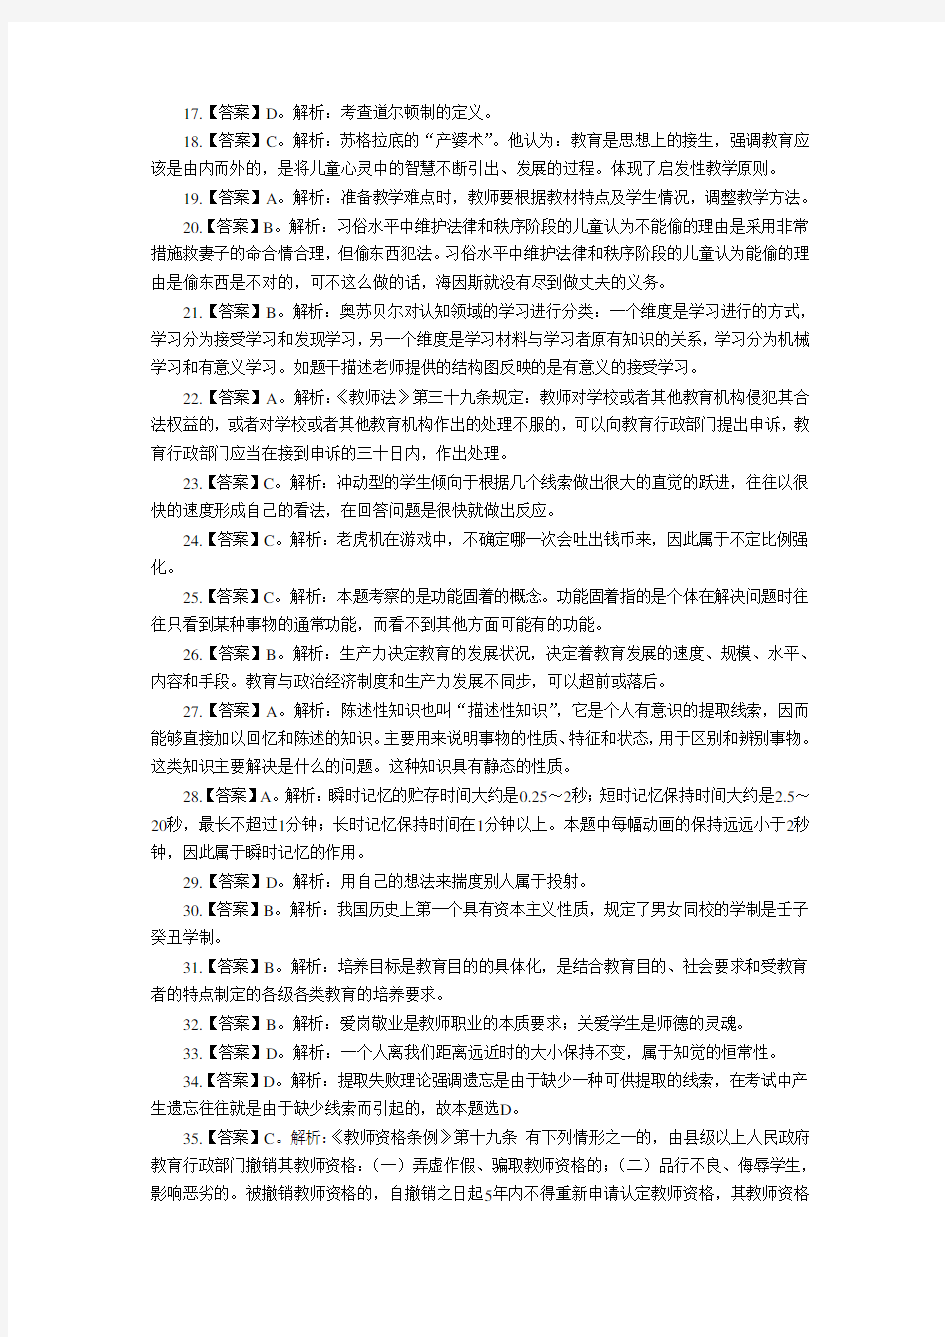 2018年广东佛山教师招聘考试笔试模拟卷(已上岸分享))